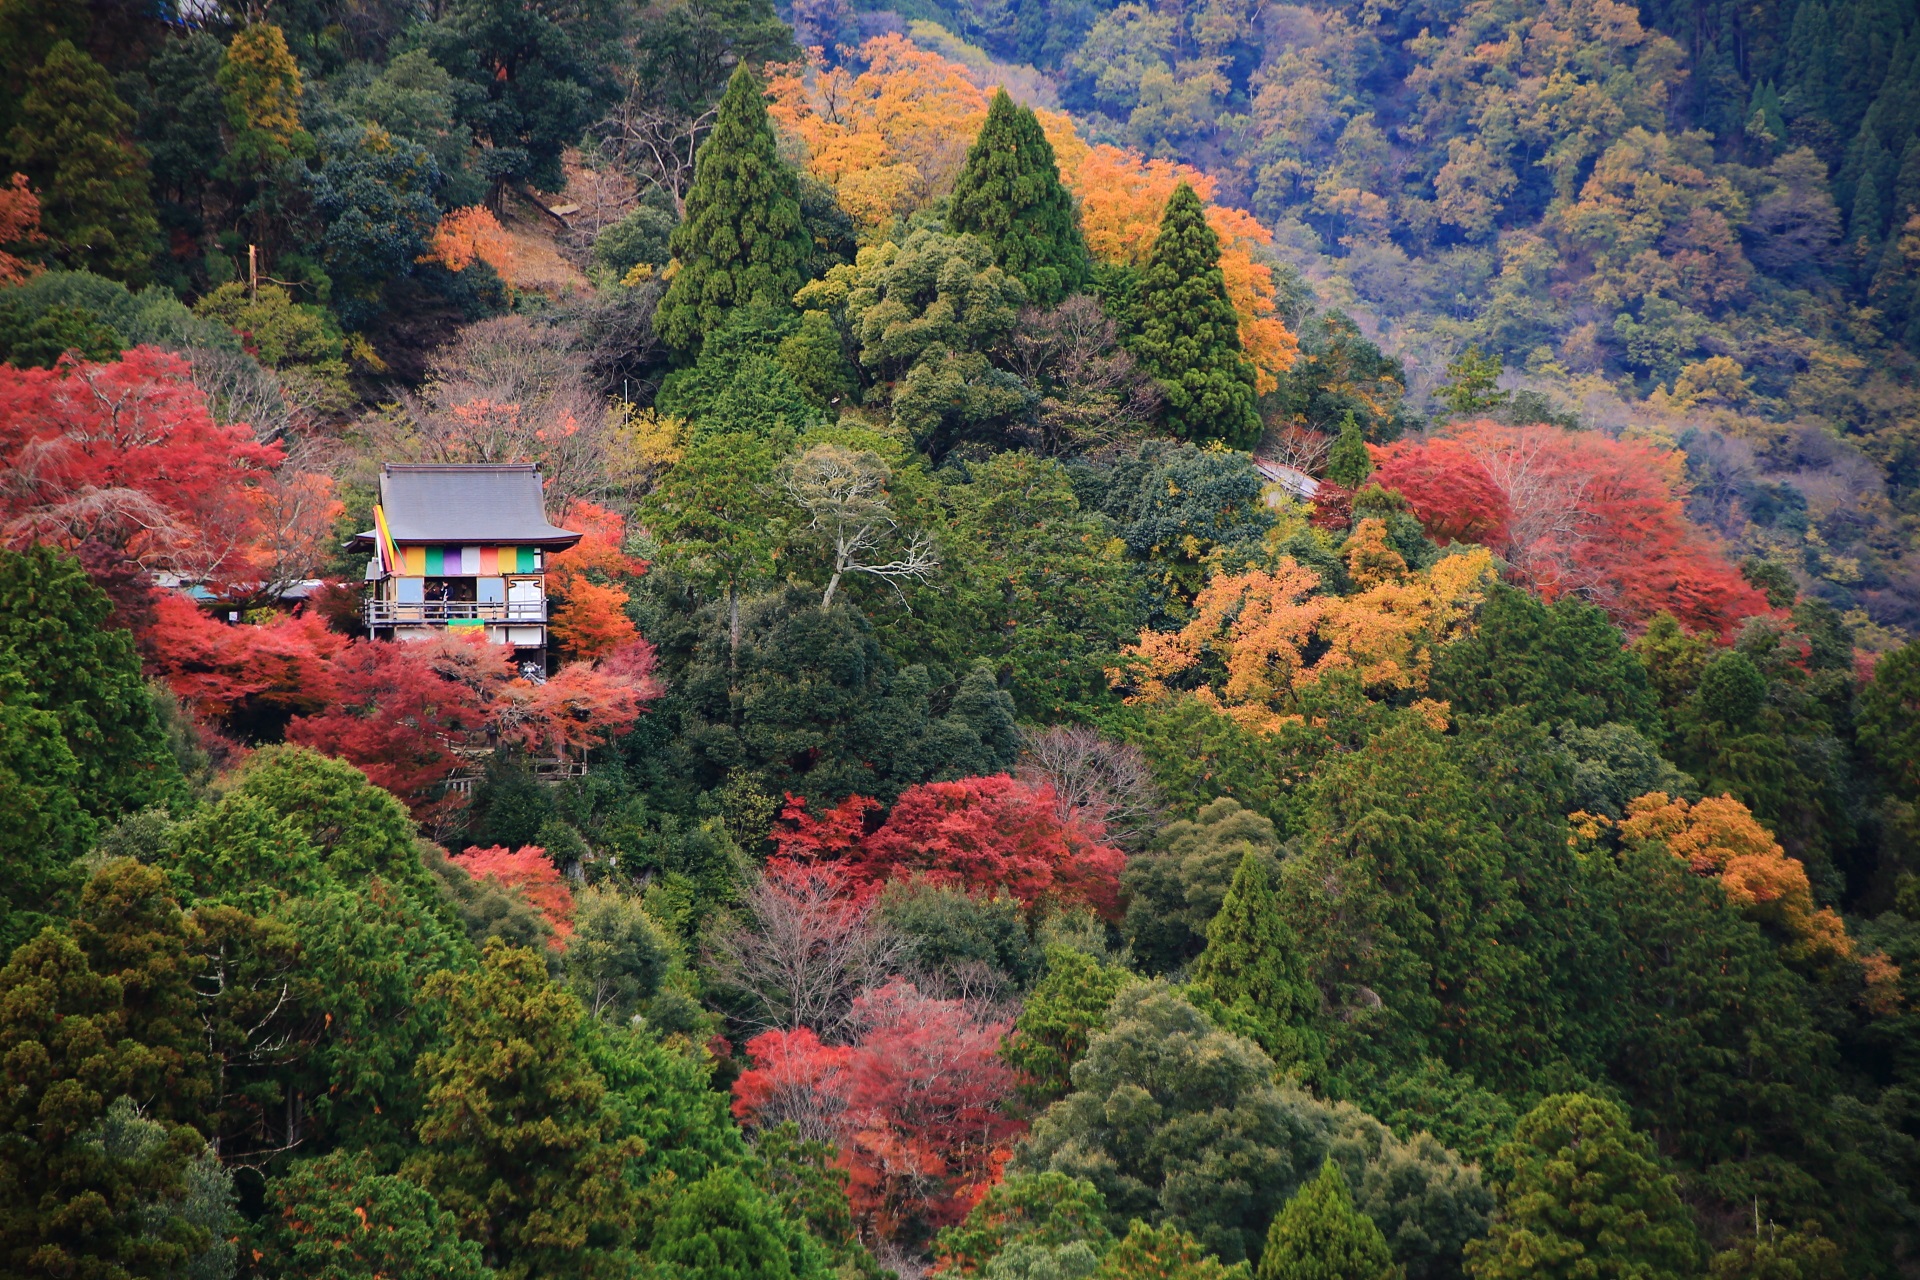 嵐山公園亀山地区展望台から眺めた紅葉に彩られた大悲閣千光寺